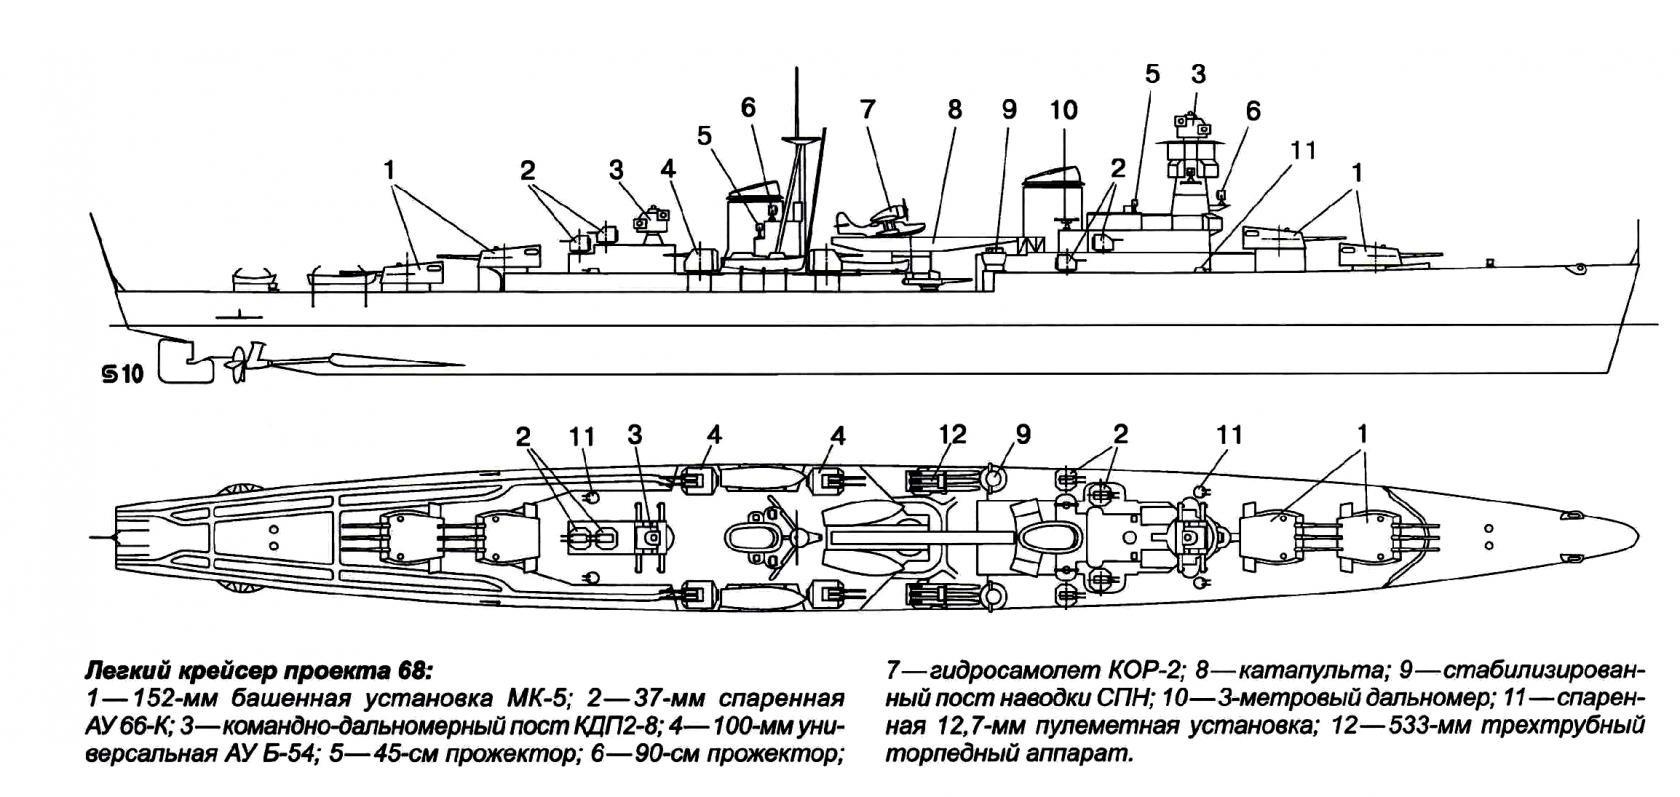 Альтернативное развитие крейсеров проекта 68 или немирный атом